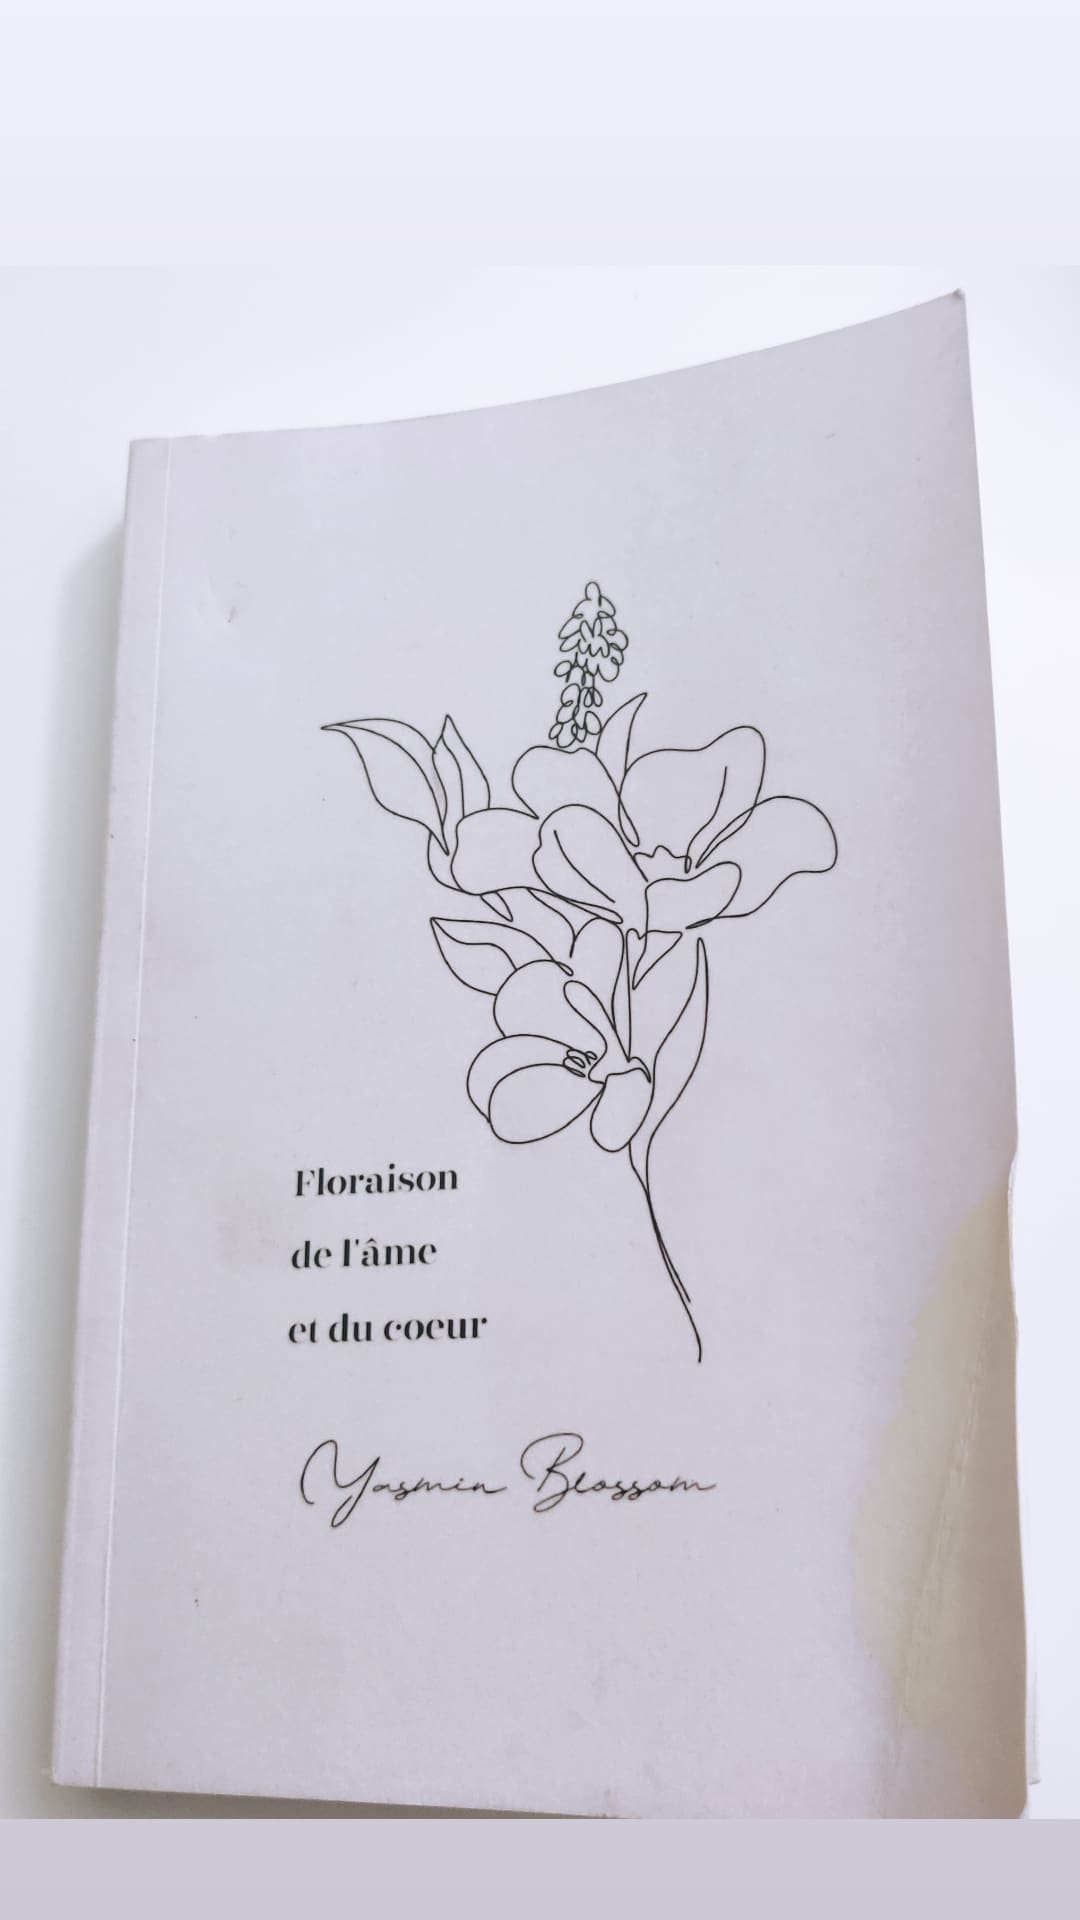 Floraison de l'âme et du cœur by Yasmin Blossom